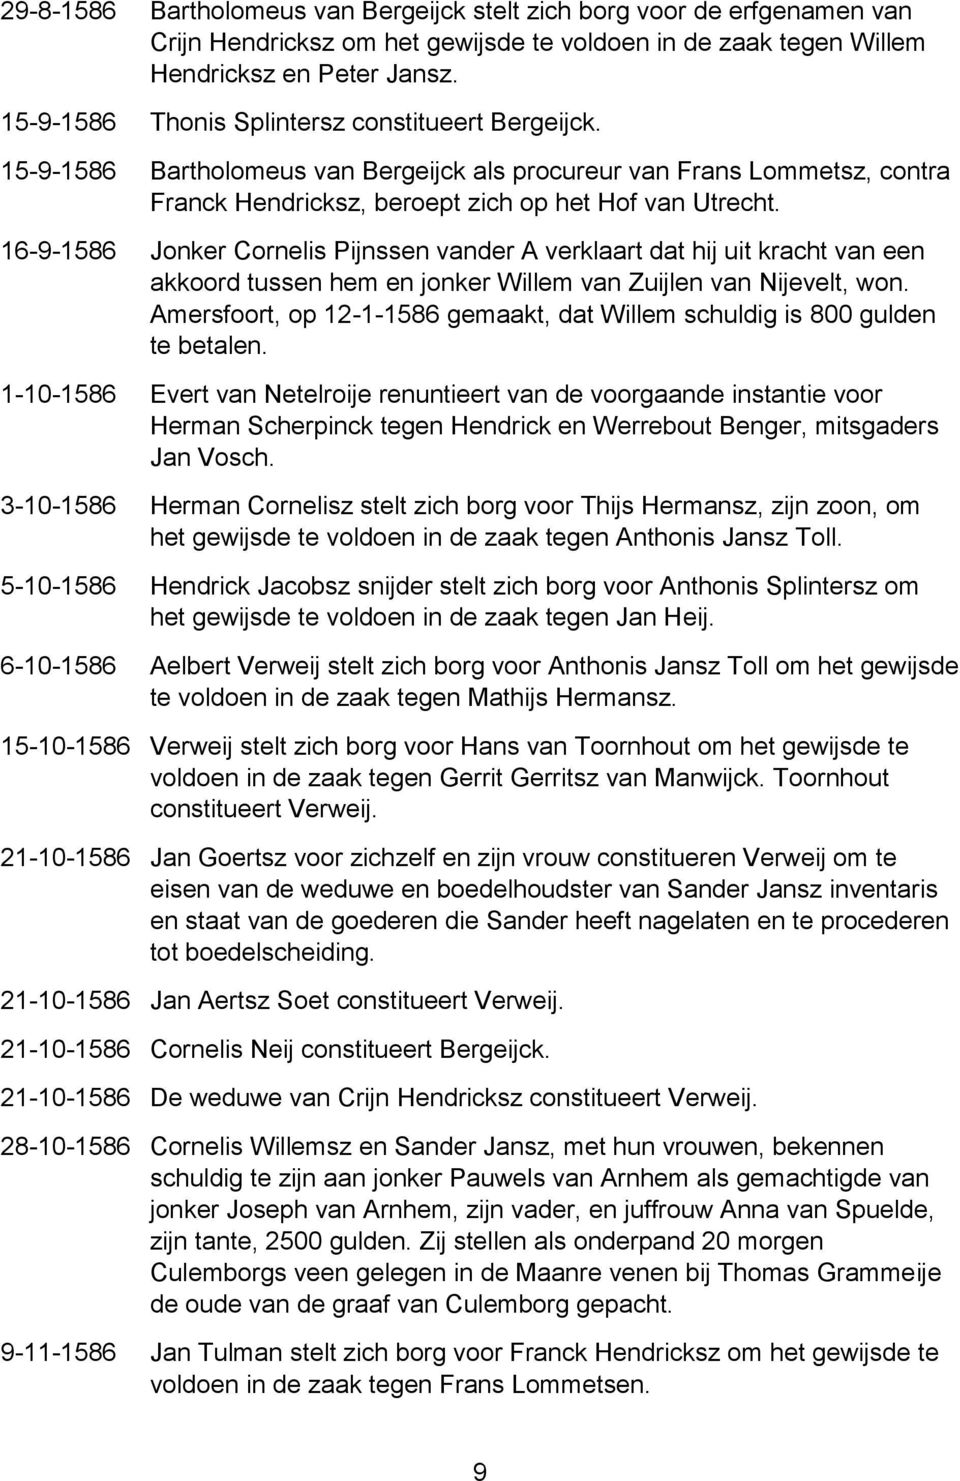 16-9-1586 Jonker Cornelis Pijnssen vander A verklaart dat hij uit kracht van een akkoord tussen hem en jonker Willem van Zuijlen van Nijevelt, won.